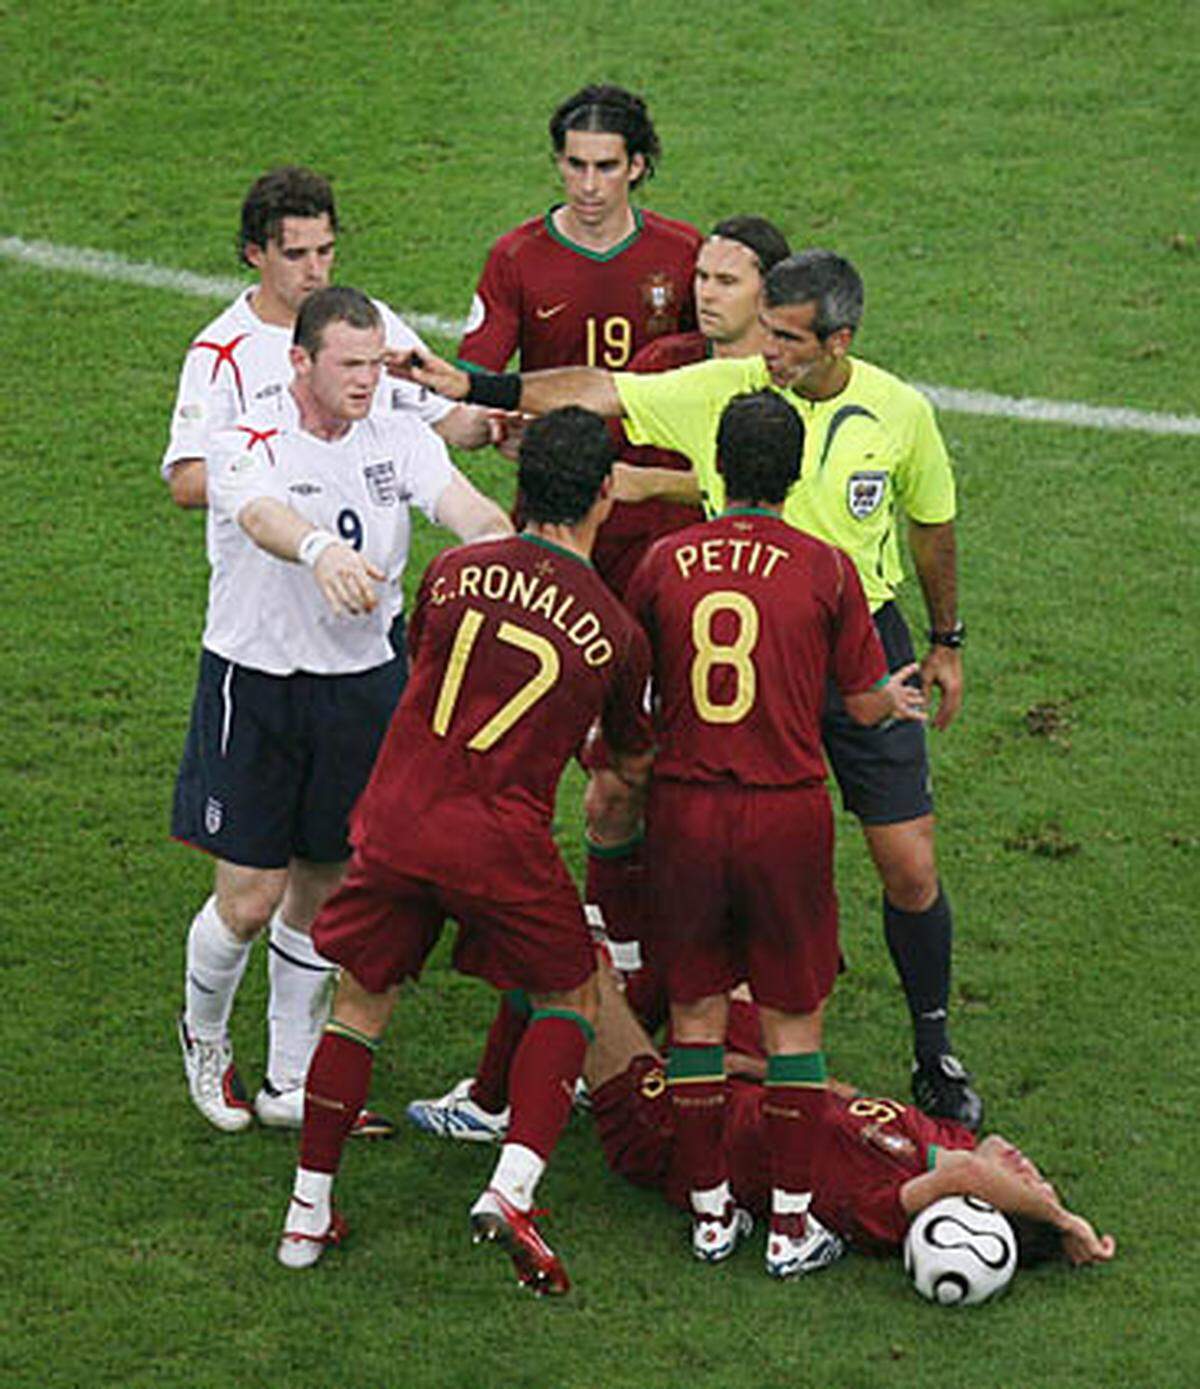 Im Viertelfinale gegen England kam es zu einer Szene, die dem Portugiesen lange vorgehalten wurde. Nach einem Foul seines Klubkollegen Wayne Rooney an Landsmann Ricardo Cavalho forderte Ronaldo vehement eine Rote Karte für Rooney.